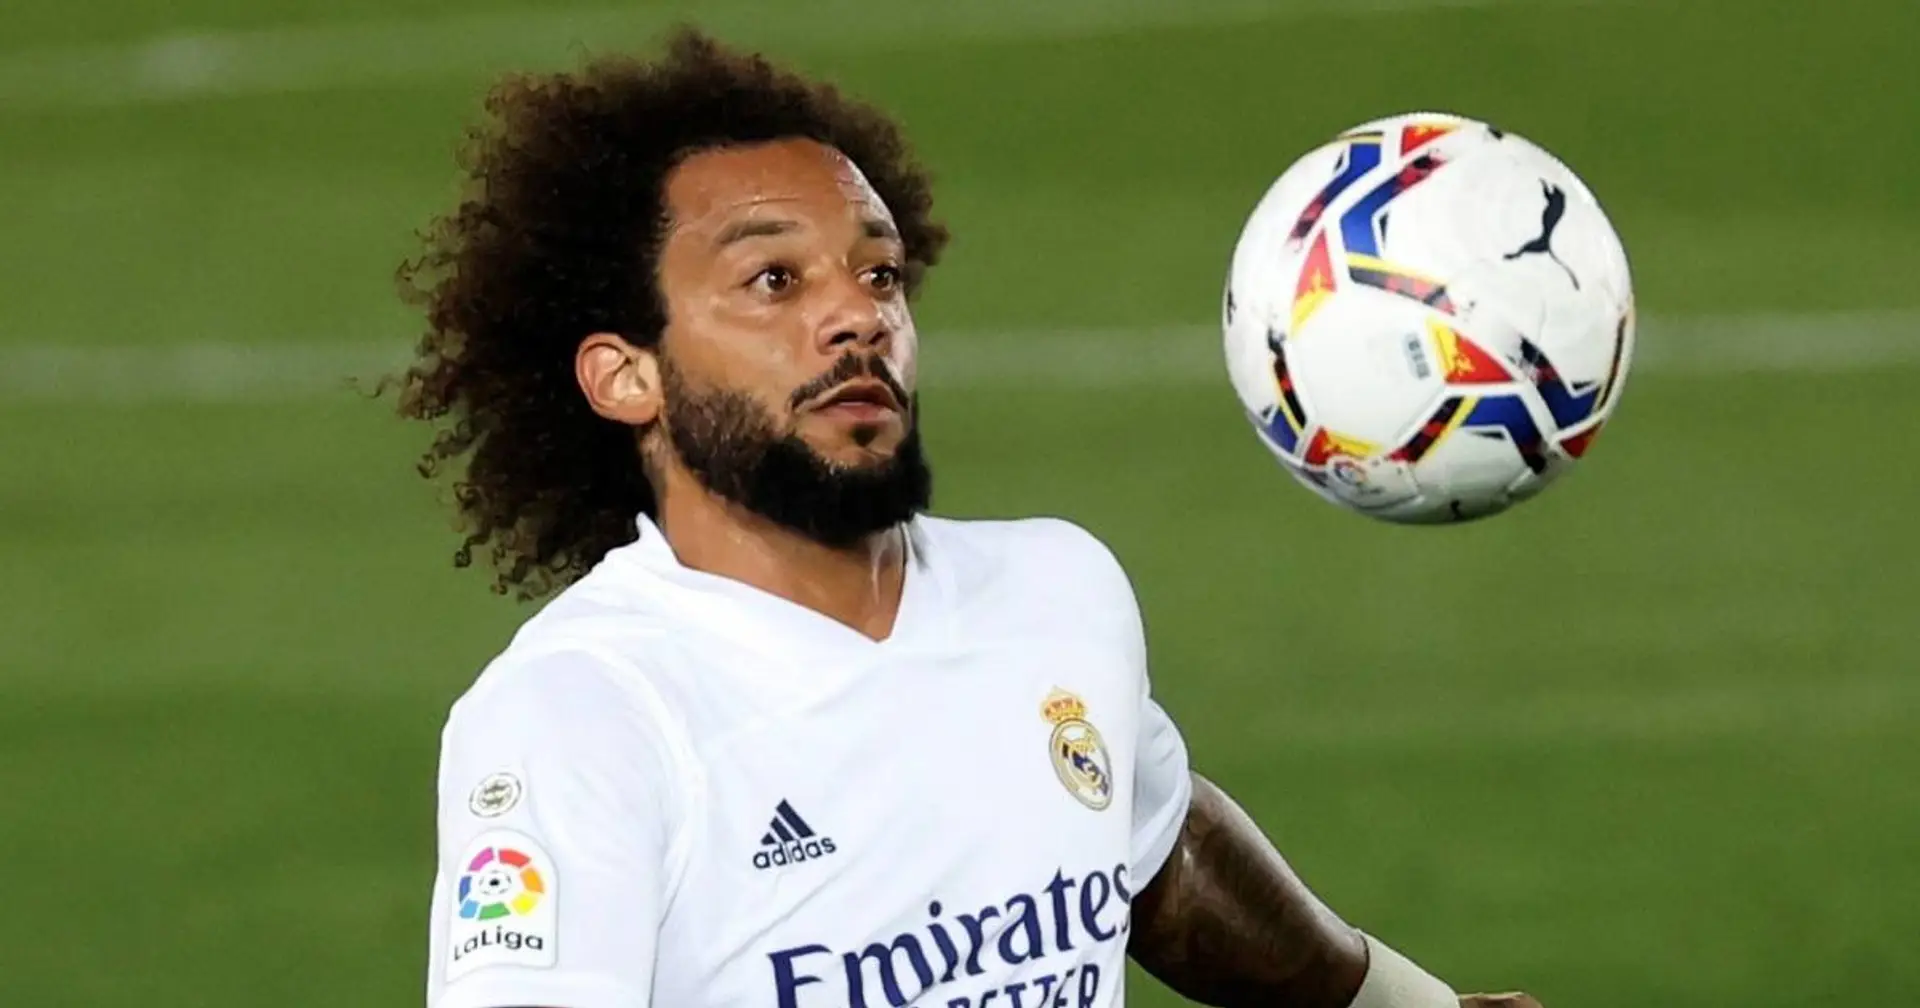 Marcelo se encuentra en la órbita del Mónaco de la Ligue 1 (fiabilidad: 3 estrellas)